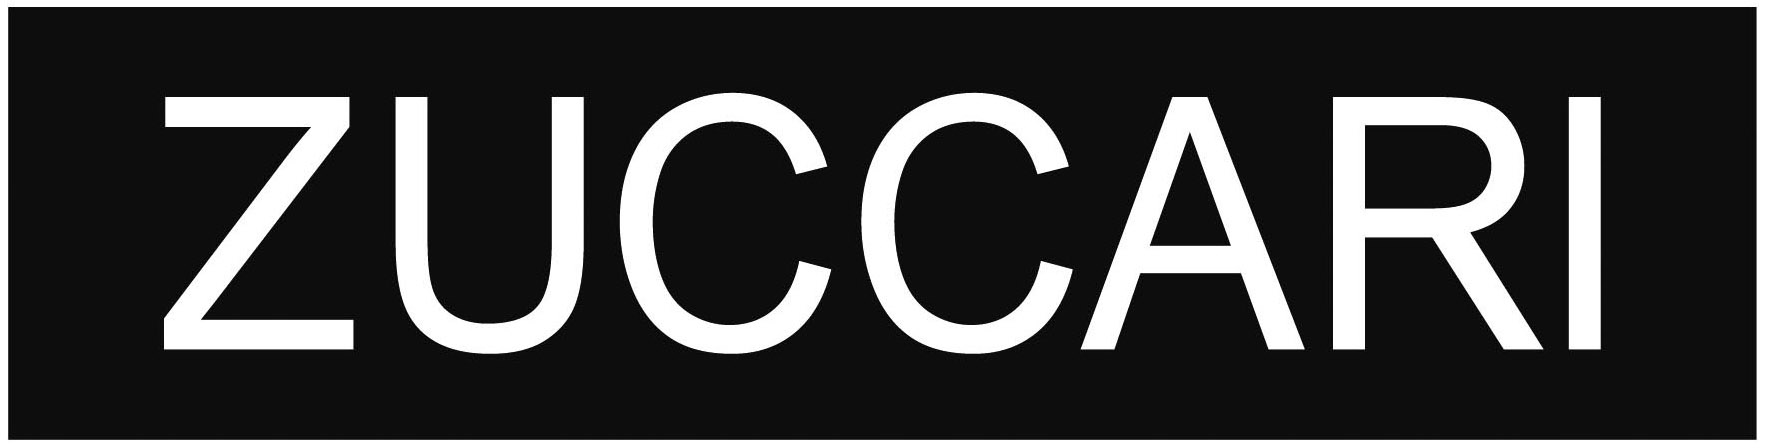 zuccari-logo